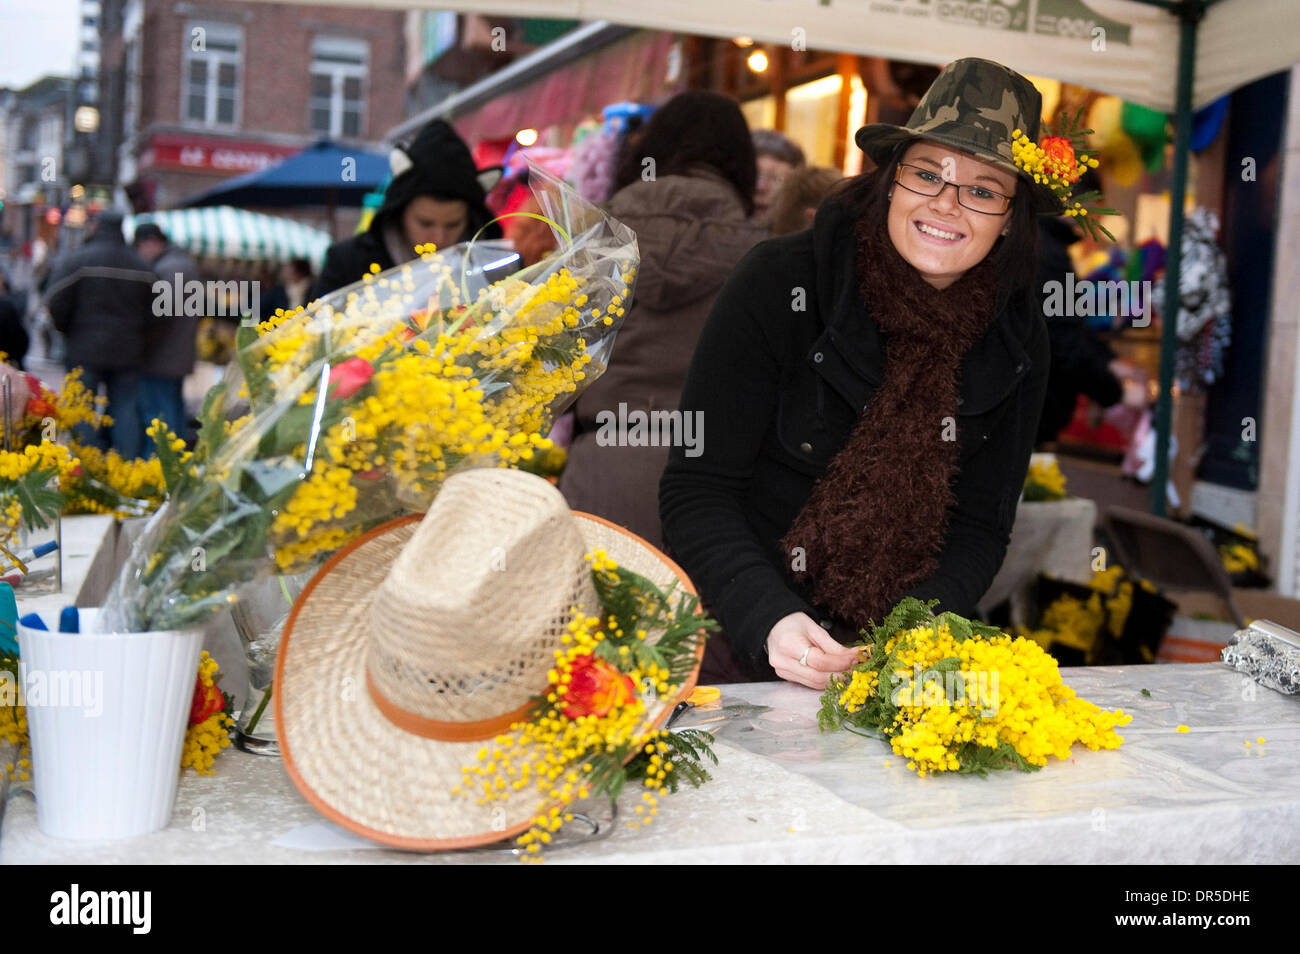 24 févr. 2009 - Binche, Hainaut, Belgique - Stand vente de fleurs au cours de défilé de carnaval dans les rues de Mardi Gras (Mardi Gras). La tradition du carnaval de Binche, qui est protégé par l'UNESCO est l'une des plus anciennes et représentant de la Wallonie. (Crédit Image : © Wiktor Dabkowski/ZUMA Press) Banque D'Images